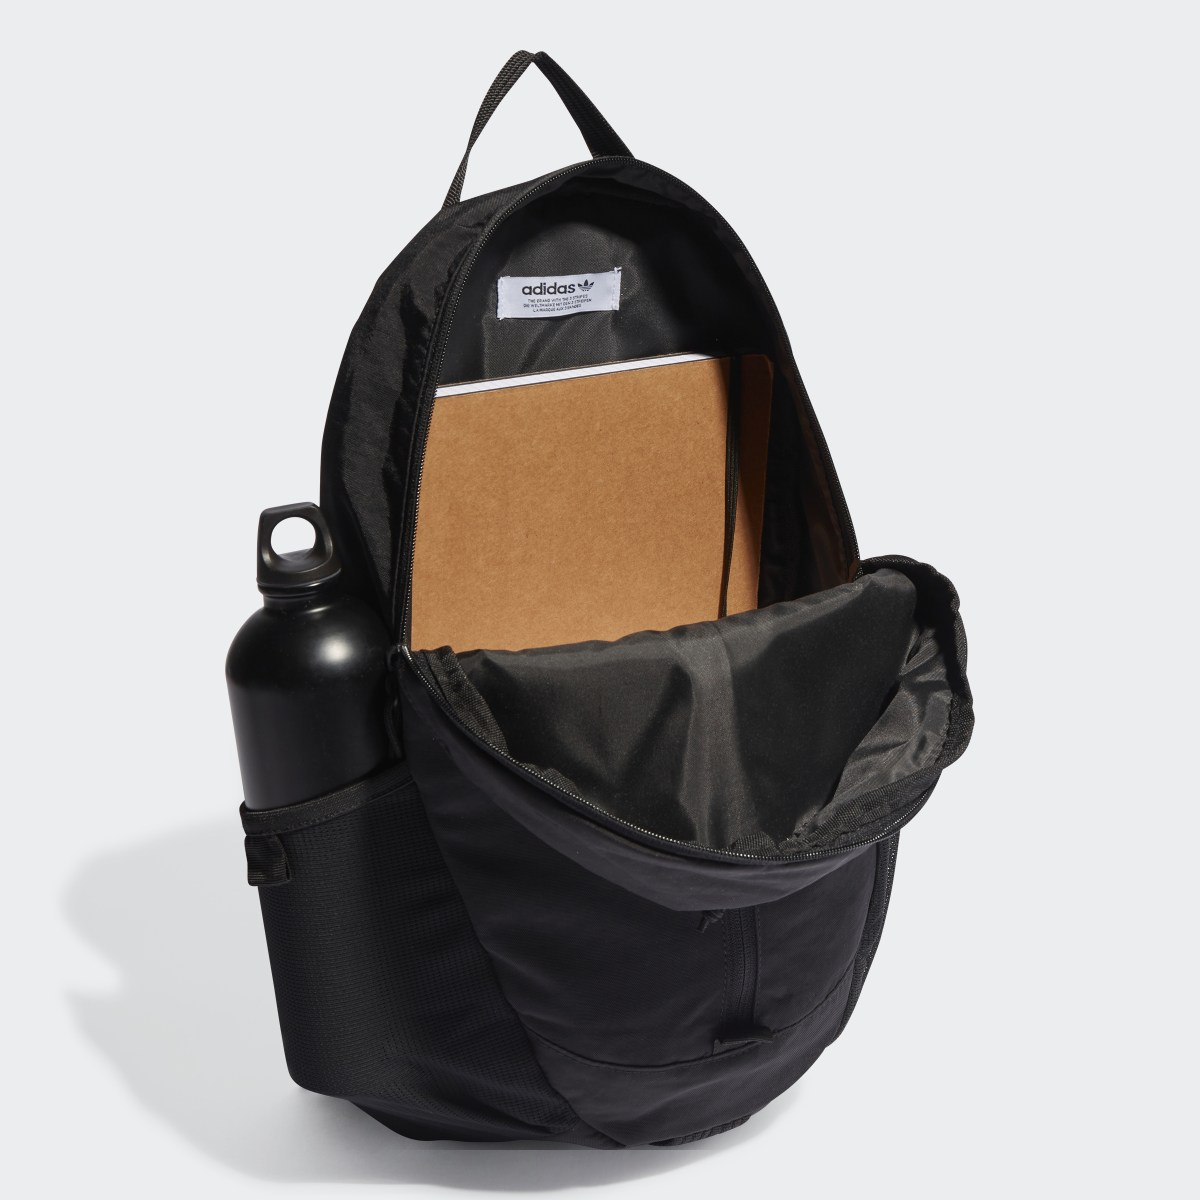 Adidas Adventure Backpack. 5